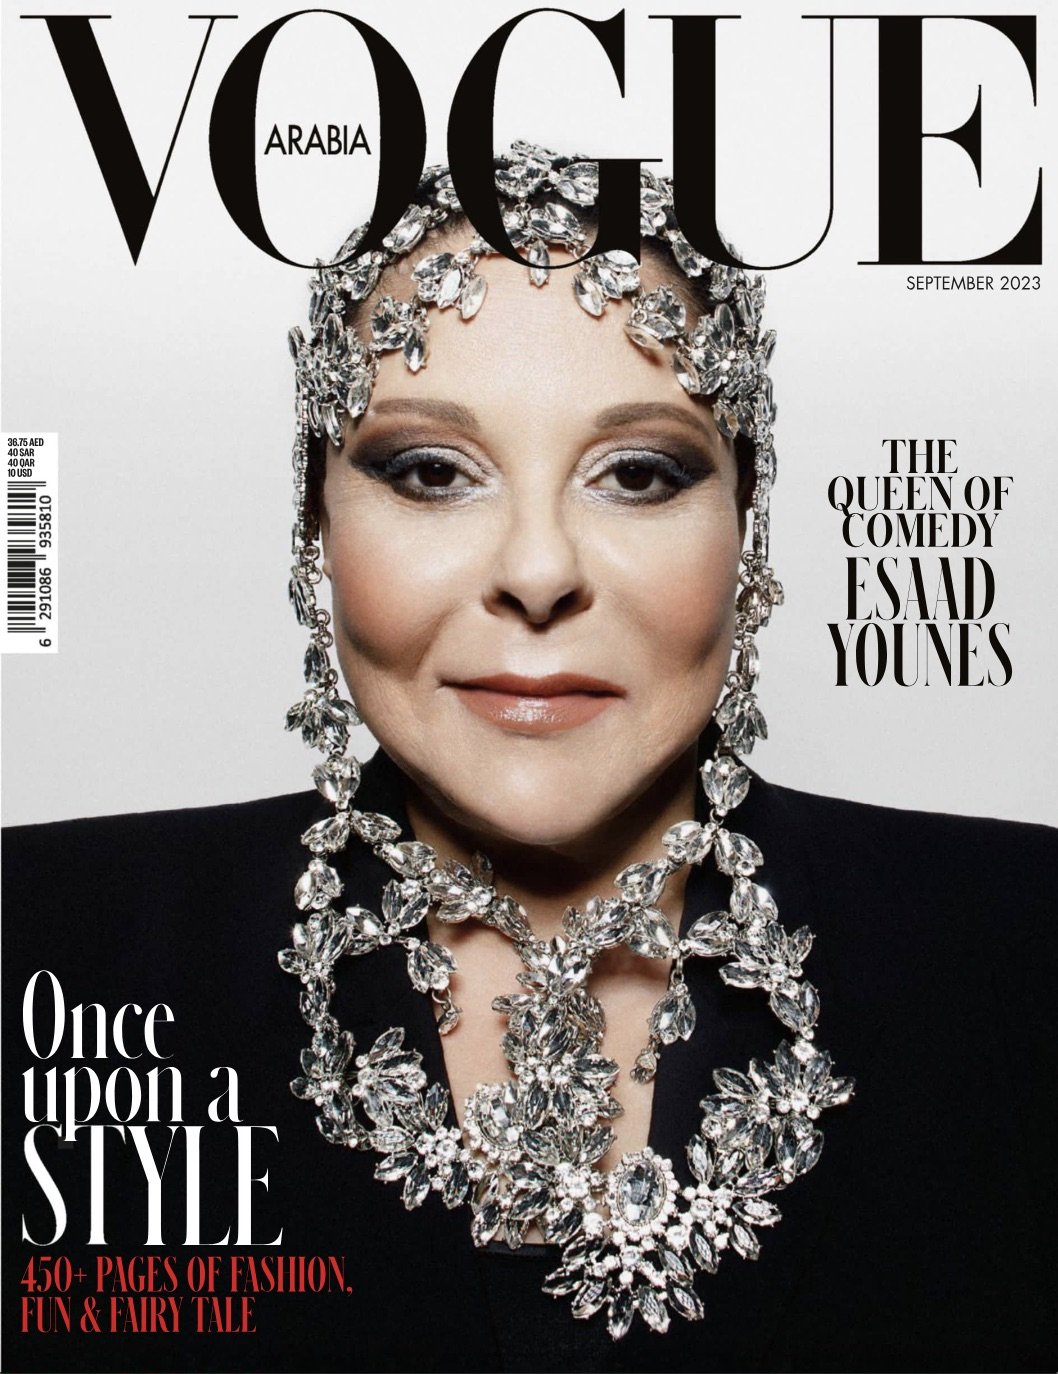 Vogue Arabia September 2023 Cover.jpg